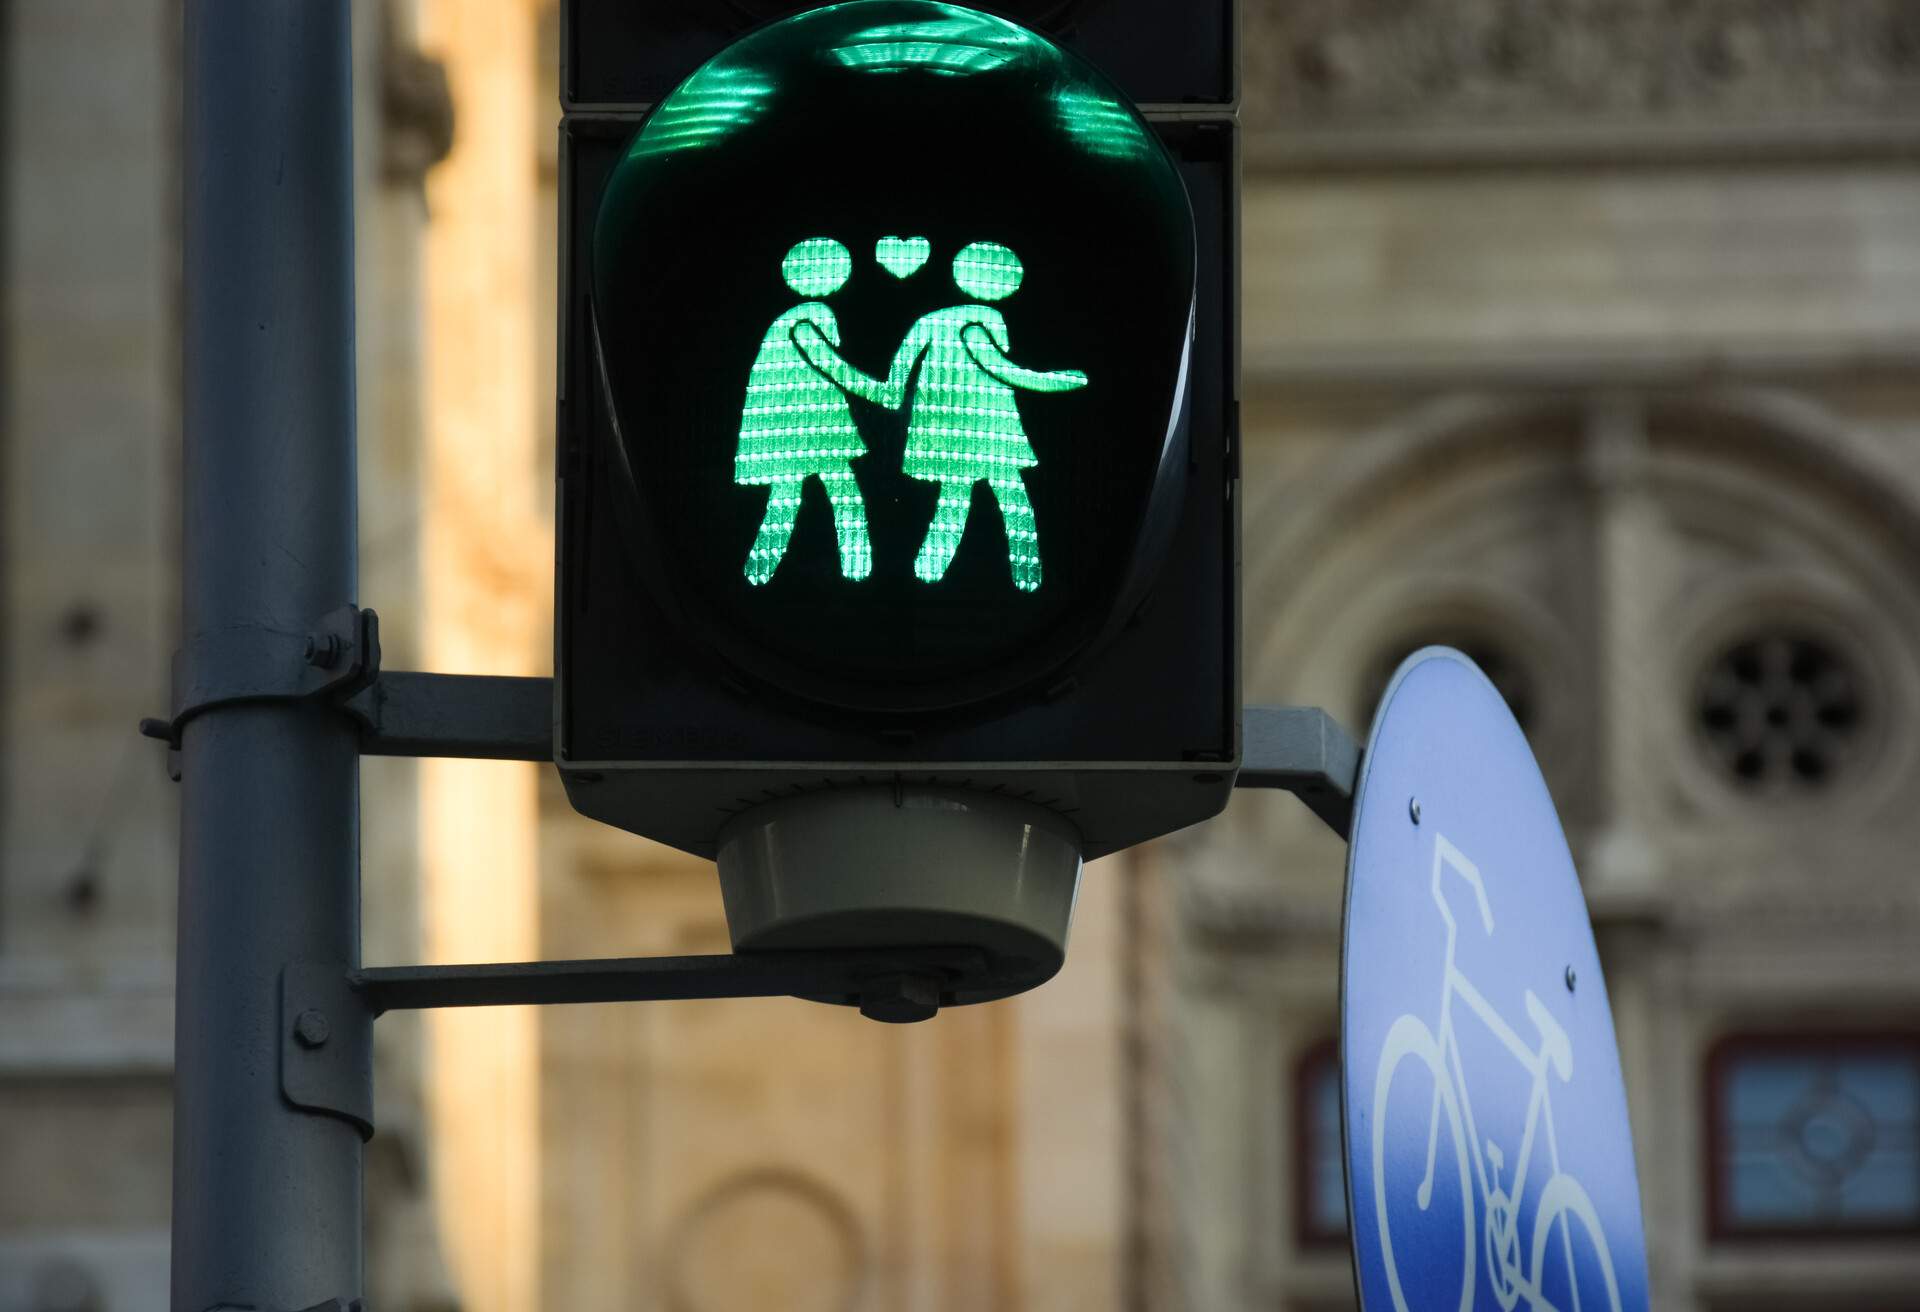 Lesbian green traffic light